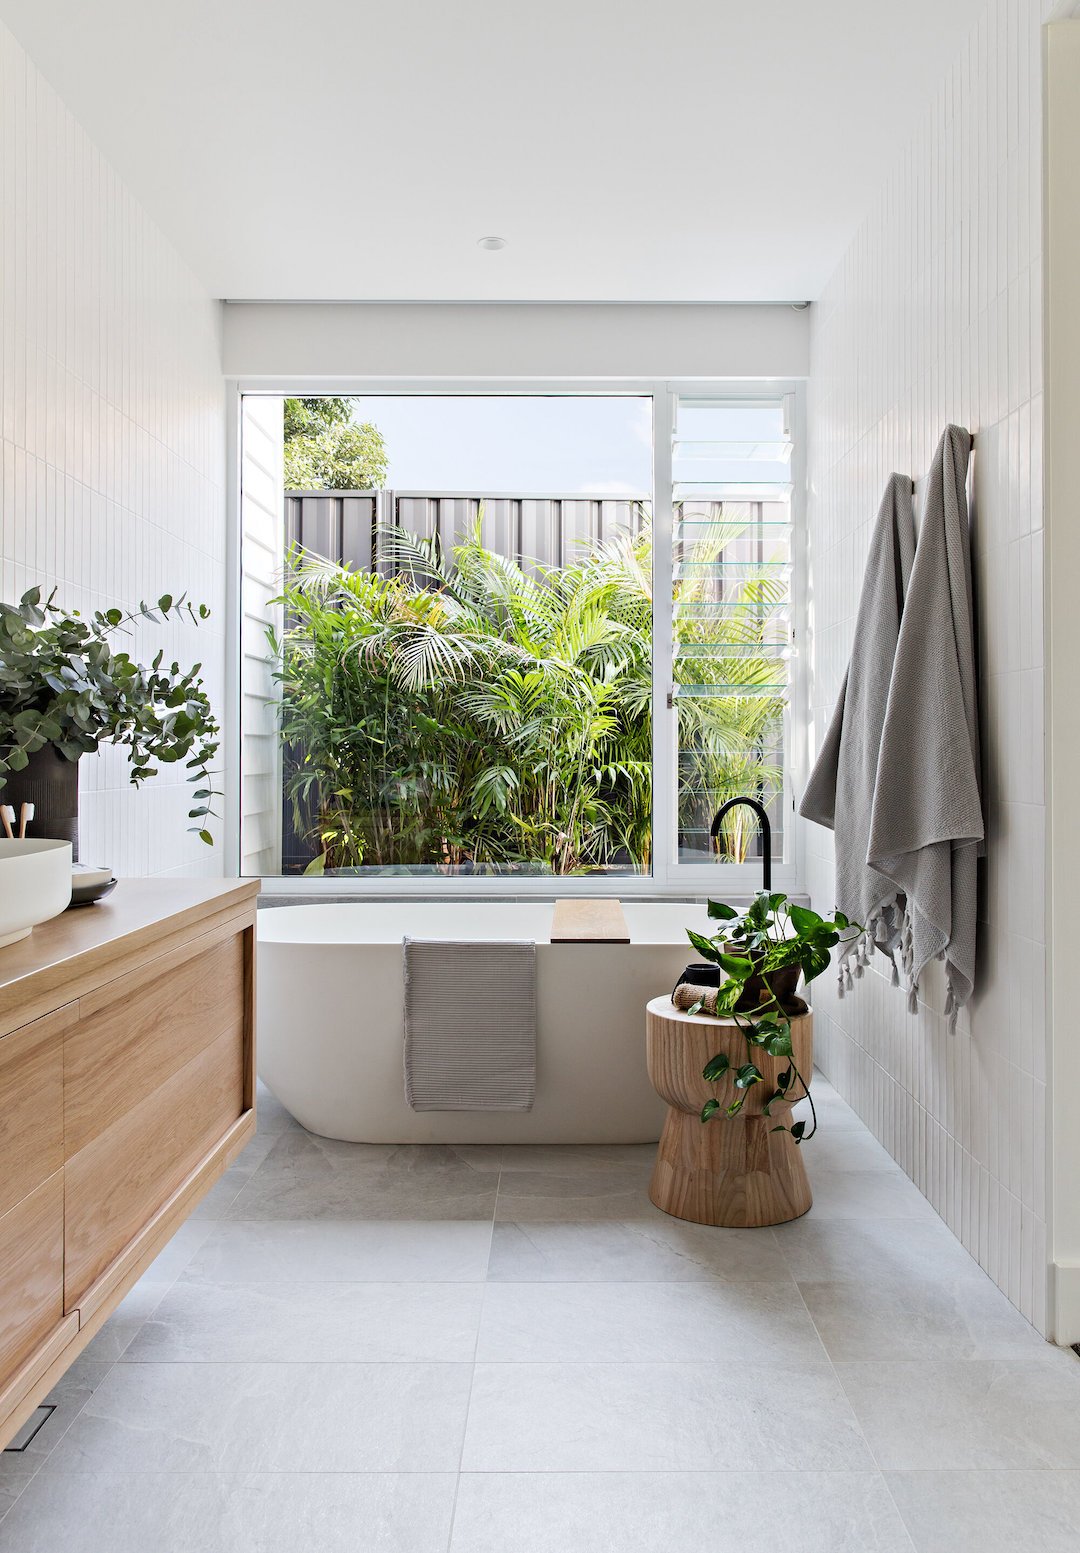 salle de bain lumineuse zen épurée végétale baignoire ovale blanche mobilier bois